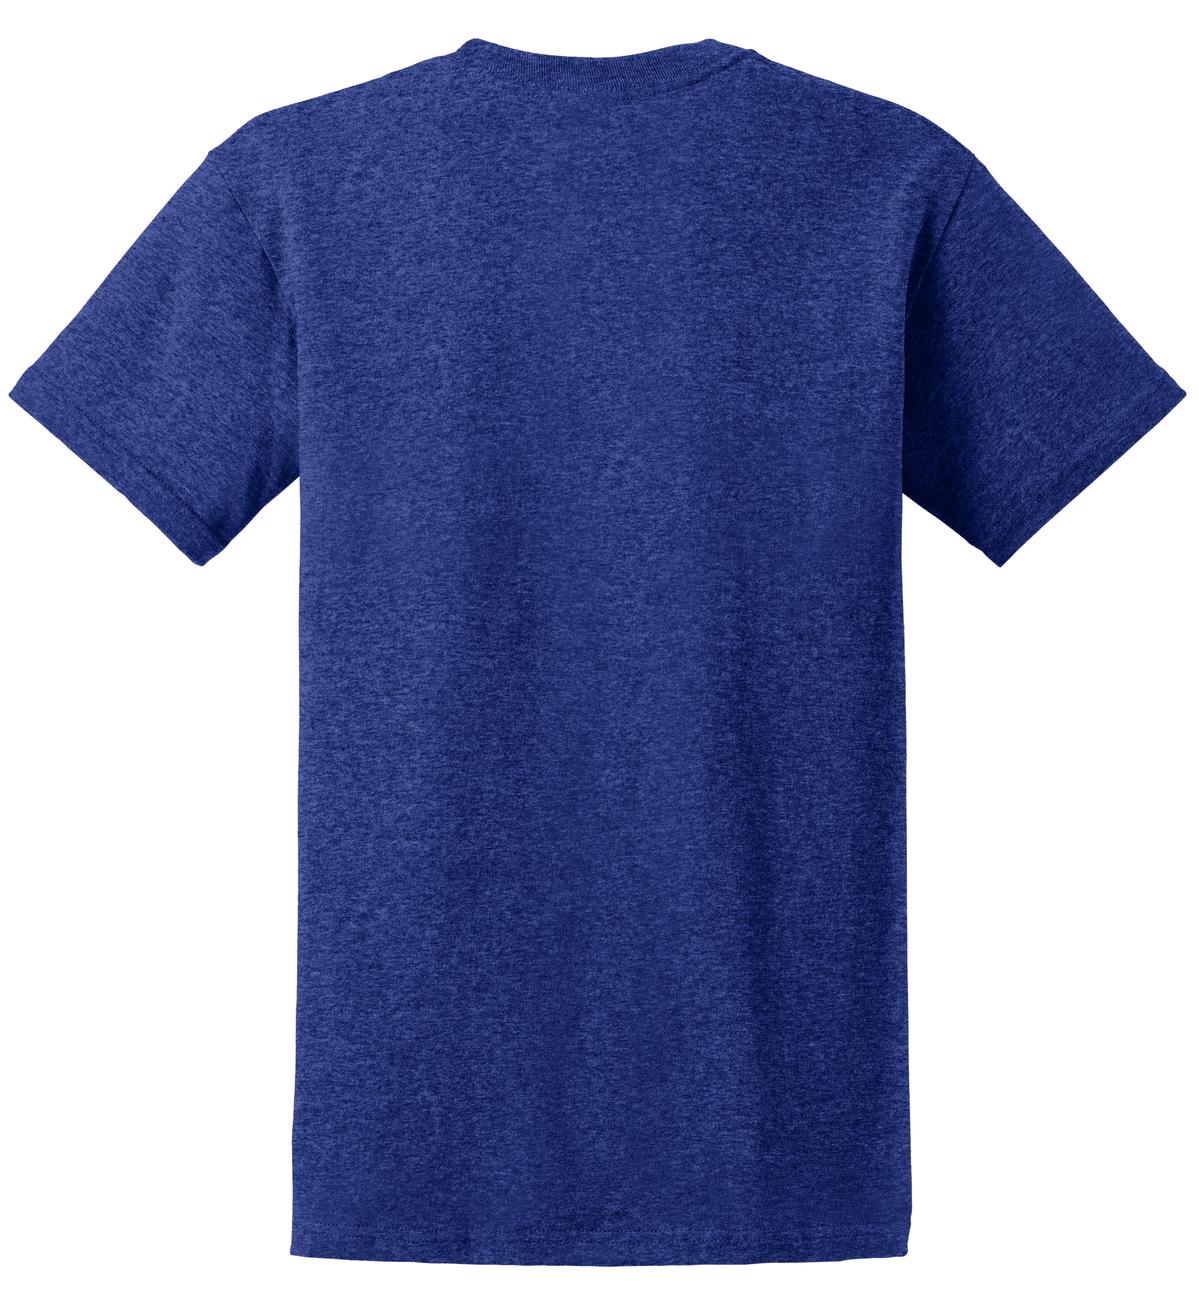 Gildan - Ultra Cotton 100% US Cotton T-Shirt. 2000 - Antique Royal